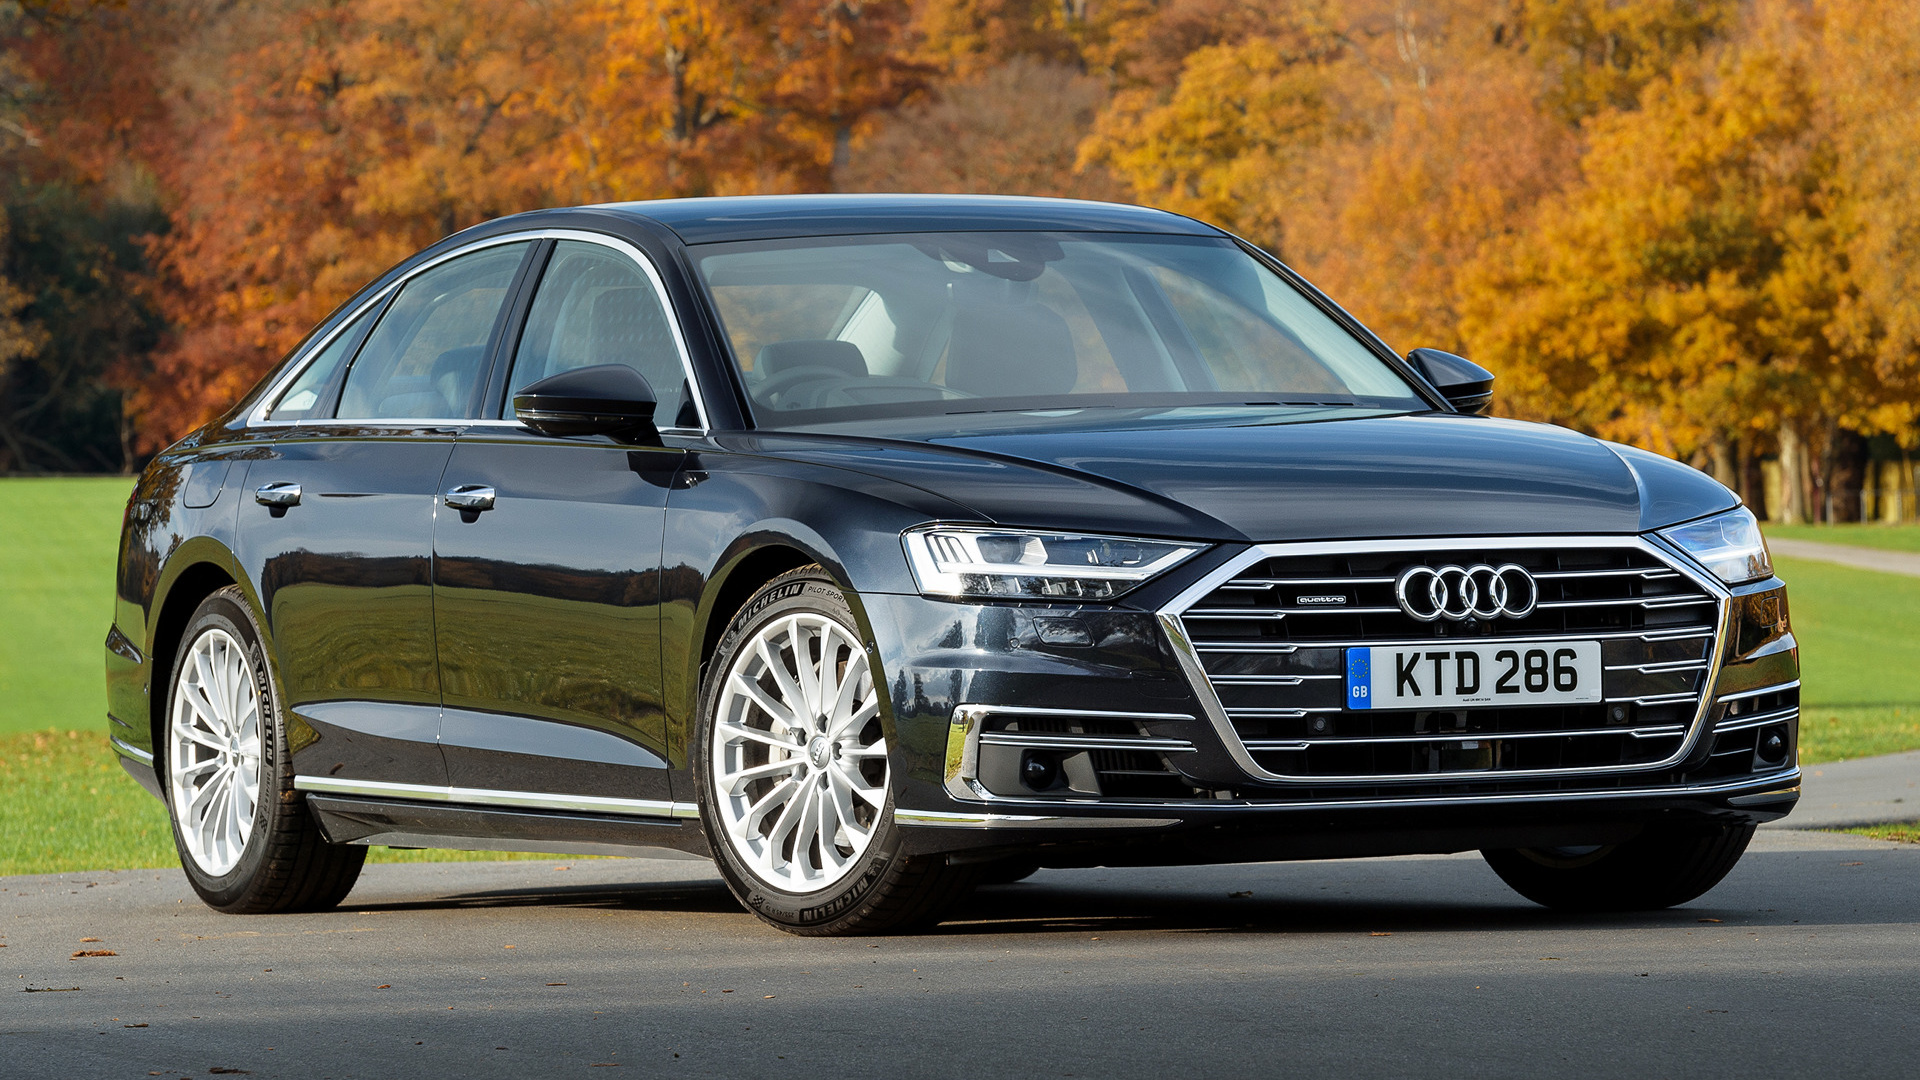 Download mobile wallpaper Audi, Car, Sedan, Vehicles, Black Car, Full Size Car, Audi A8 for free.